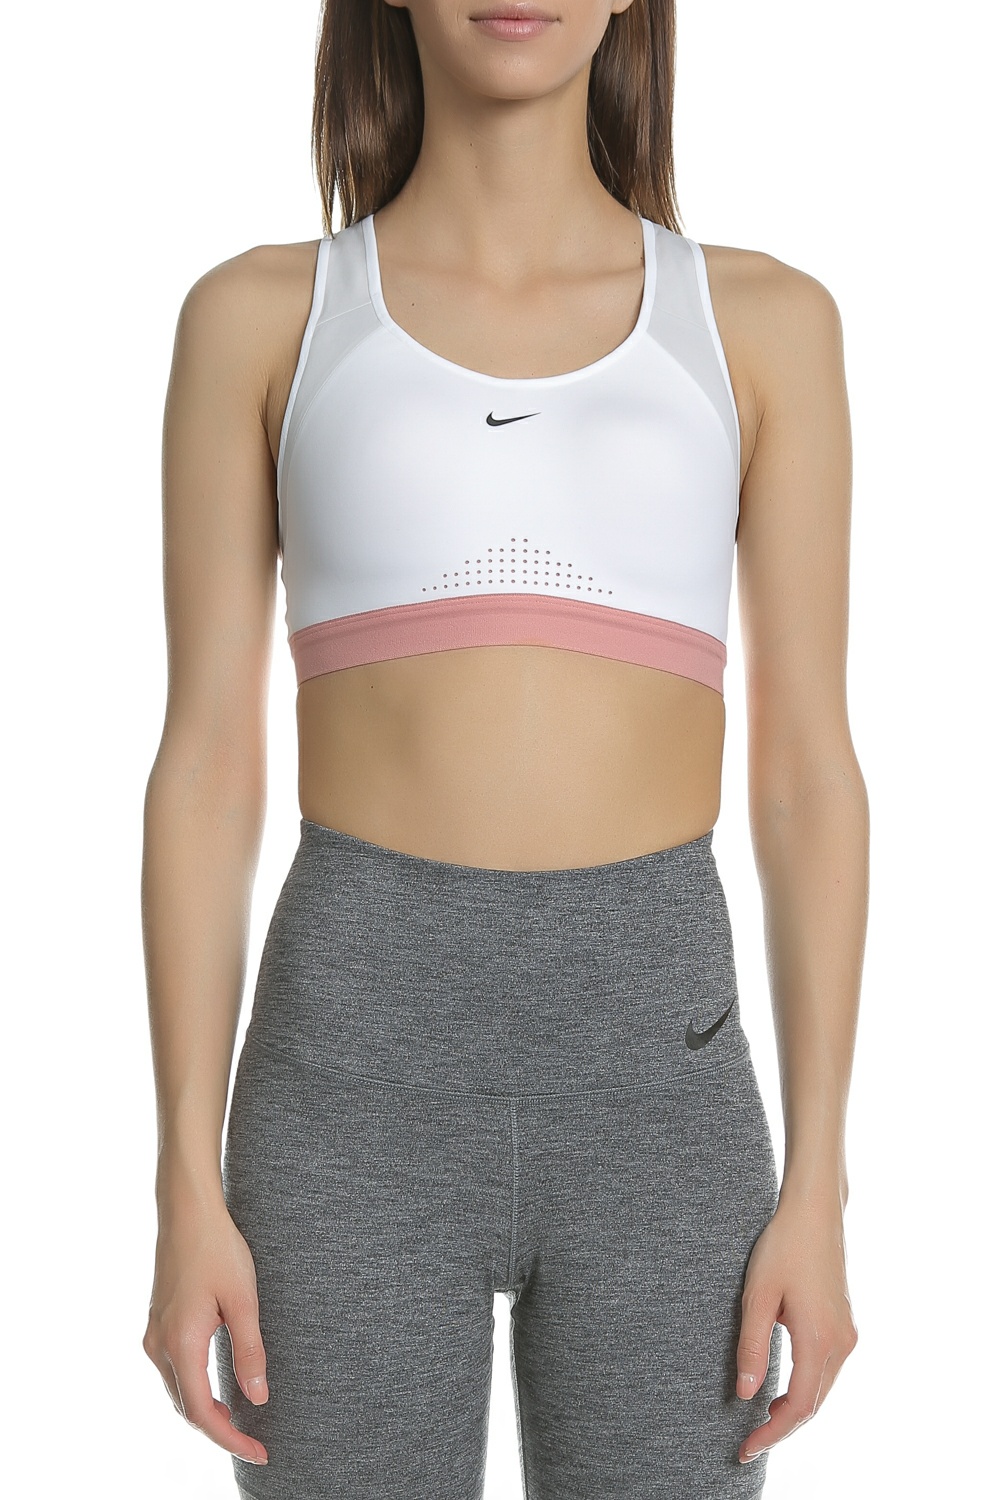 NIKE – Γυναικείο αθλητικό μπουστάκι NIKE MOTION ADAPT λευκό